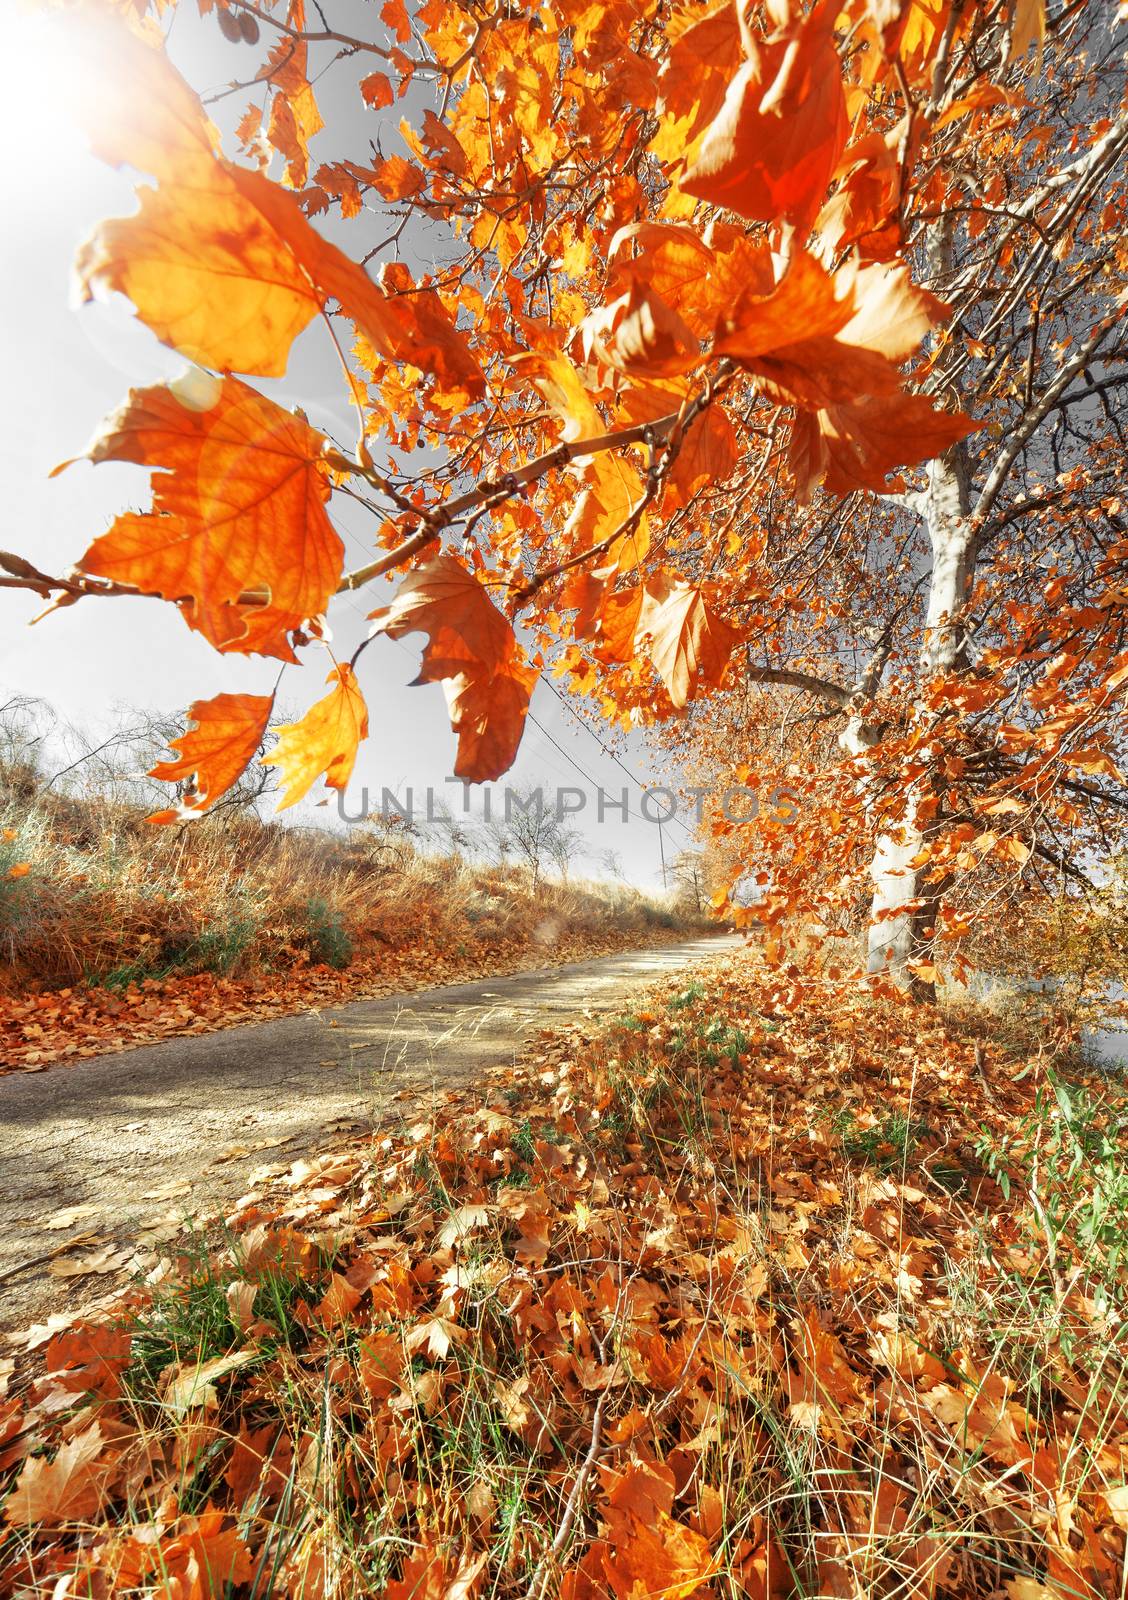 Autumn scenery. Orange tree branch